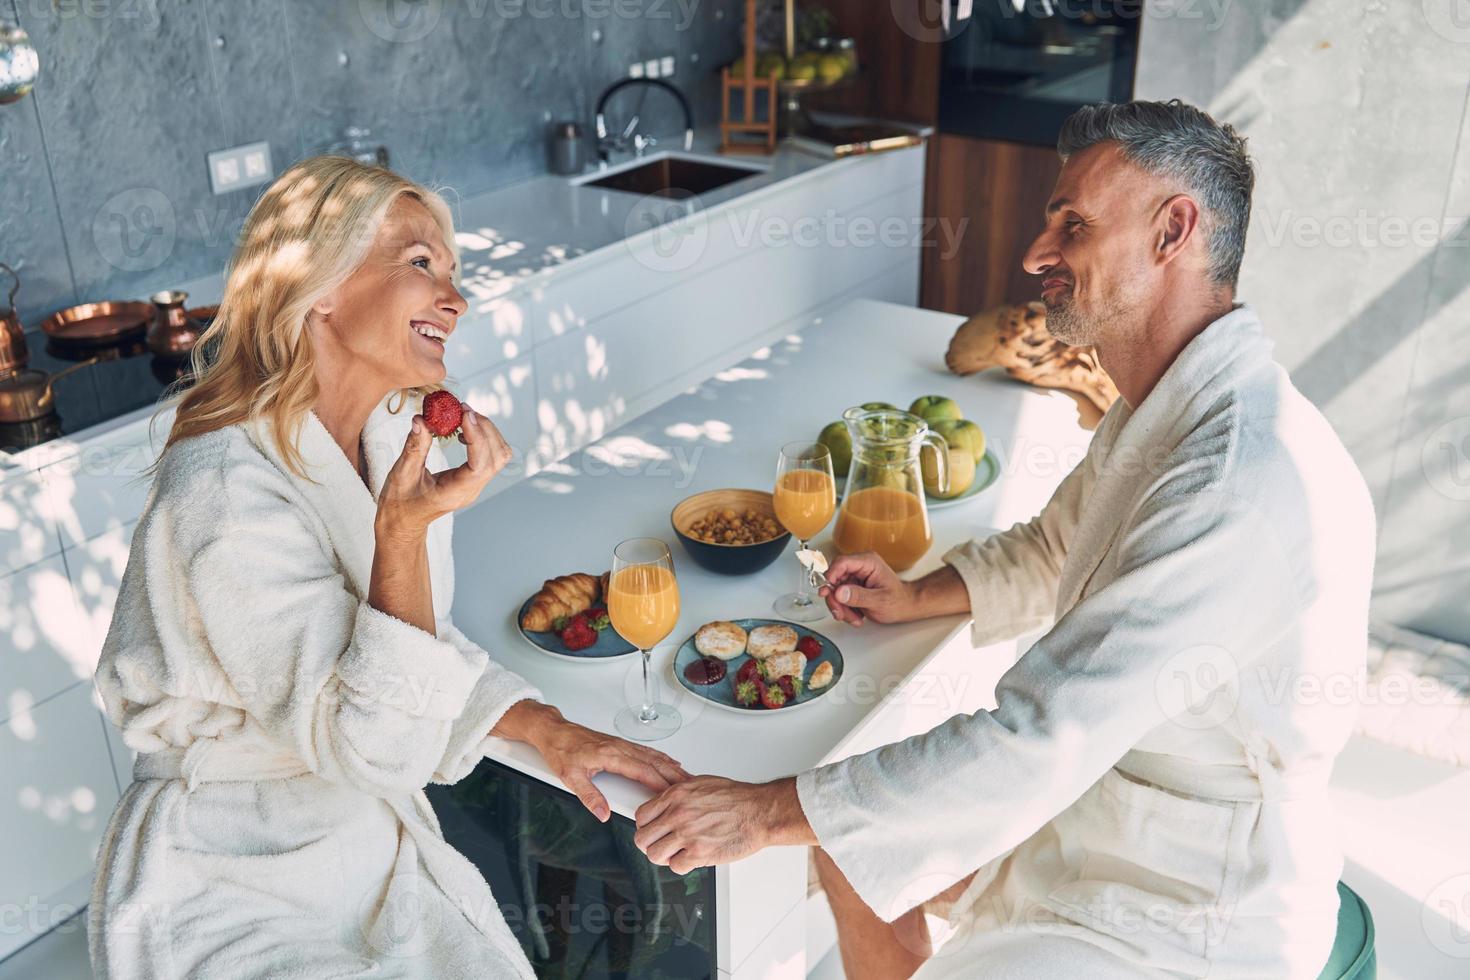 vista superior do lindo casal maduro em roupões de banho tomando café da manhã juntos enquanto passa o tempo na cozinha doméstica foto